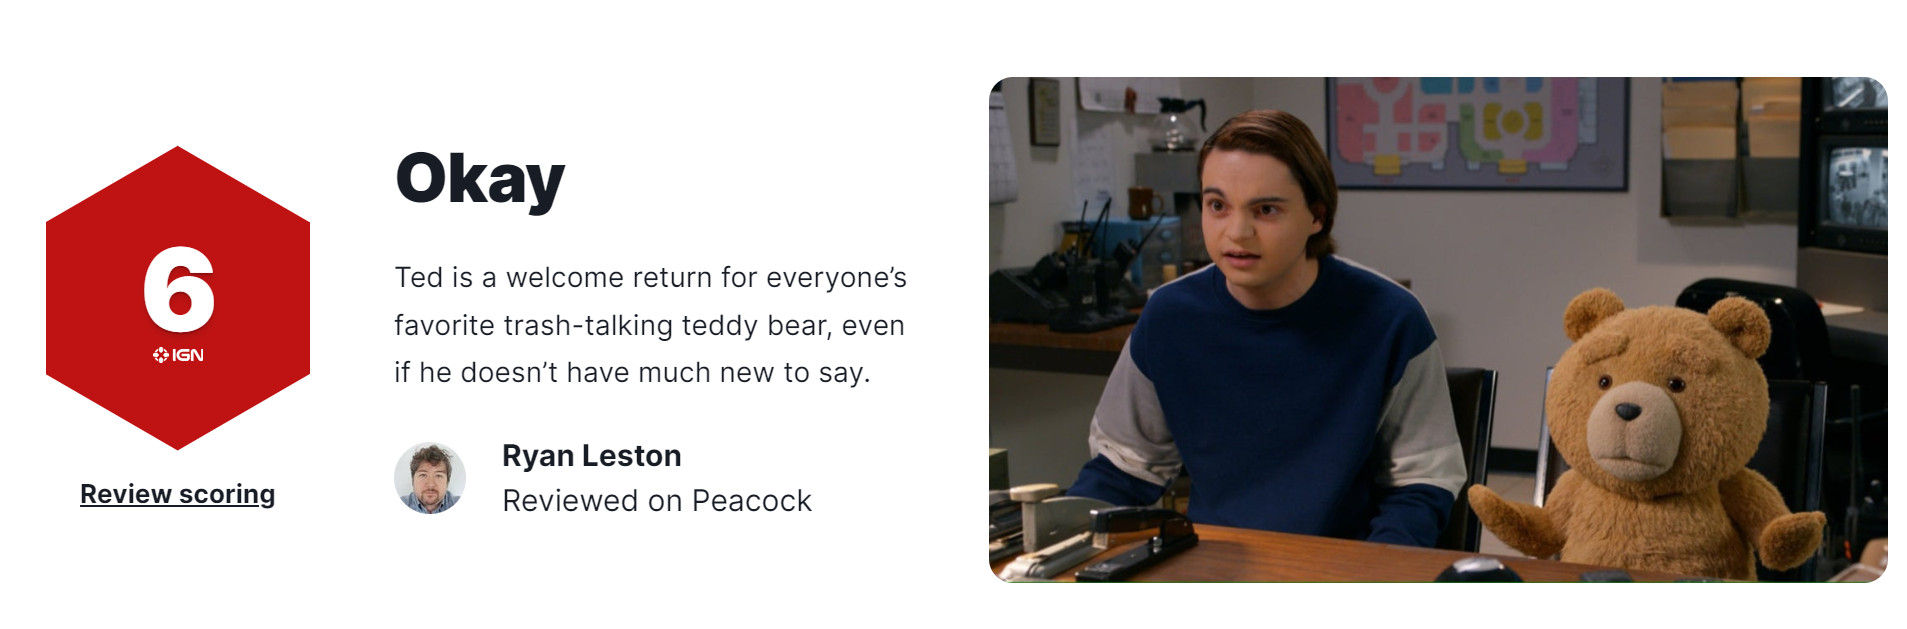 《泰迪熊》前传剧集IGN 6分 没有带来太多新意